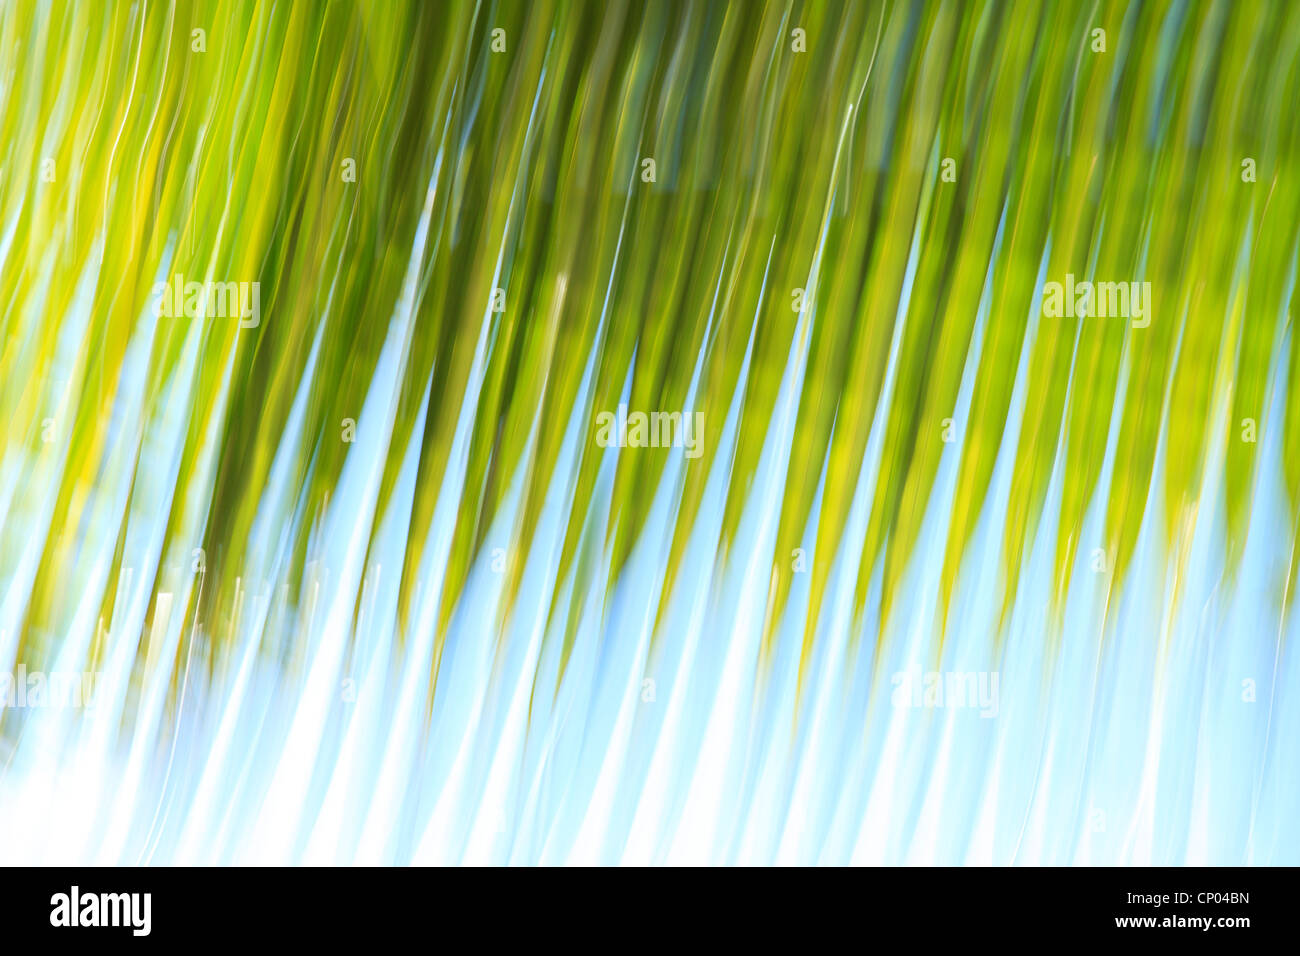 Impressionistische Darstellung der Palmwedel vor blauem Himmel Stockfoto